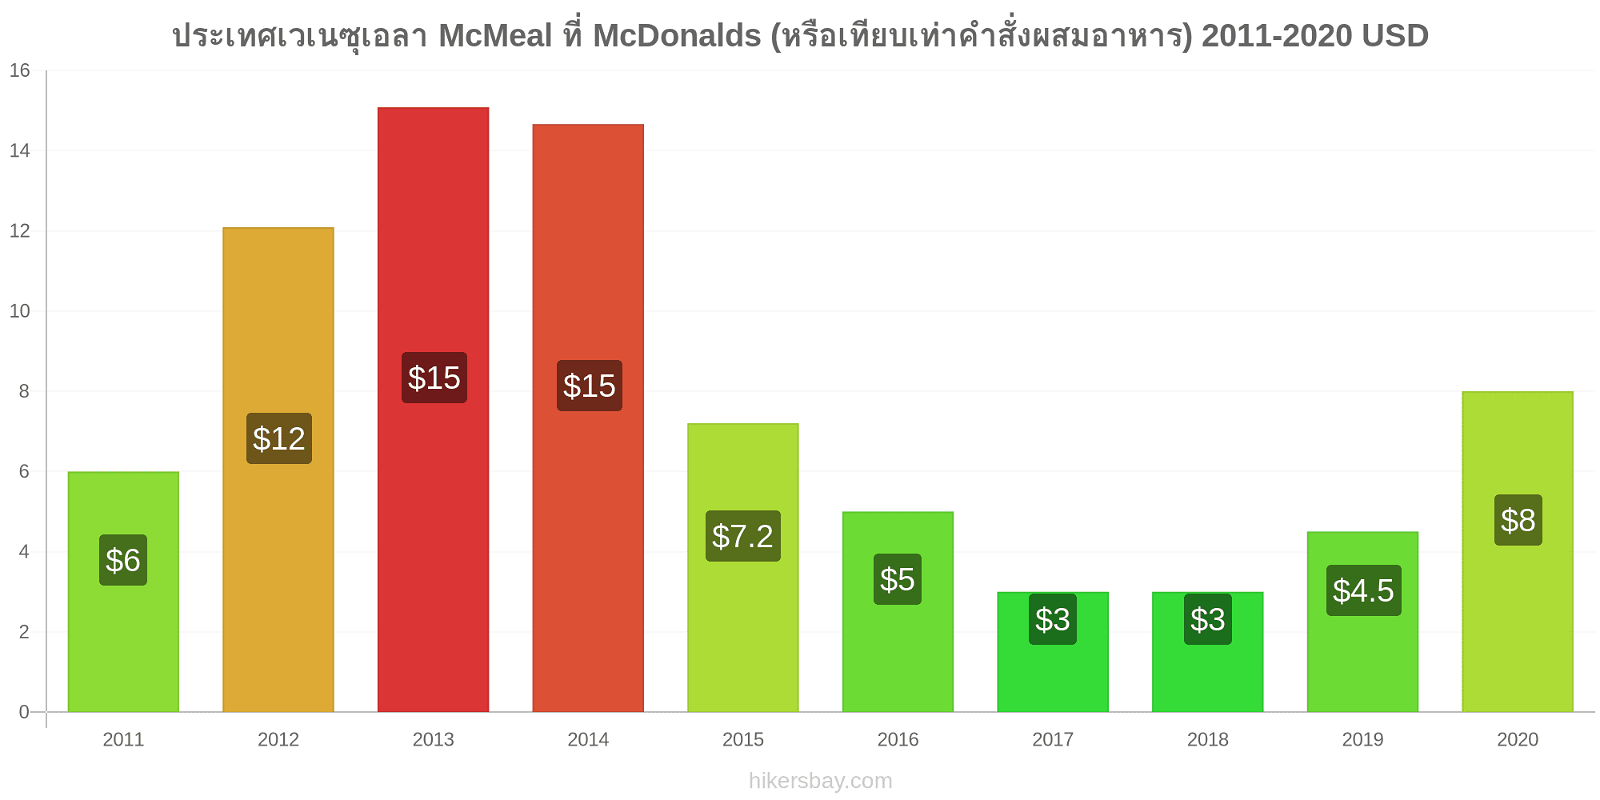 ประเทศเวเนซุเอลา การเปลี่ยนแปลงราคา McMeal ที่ McDonalds (หรือเทียบเท่าคำสั่งผสมอาหาร) hikersbay.com